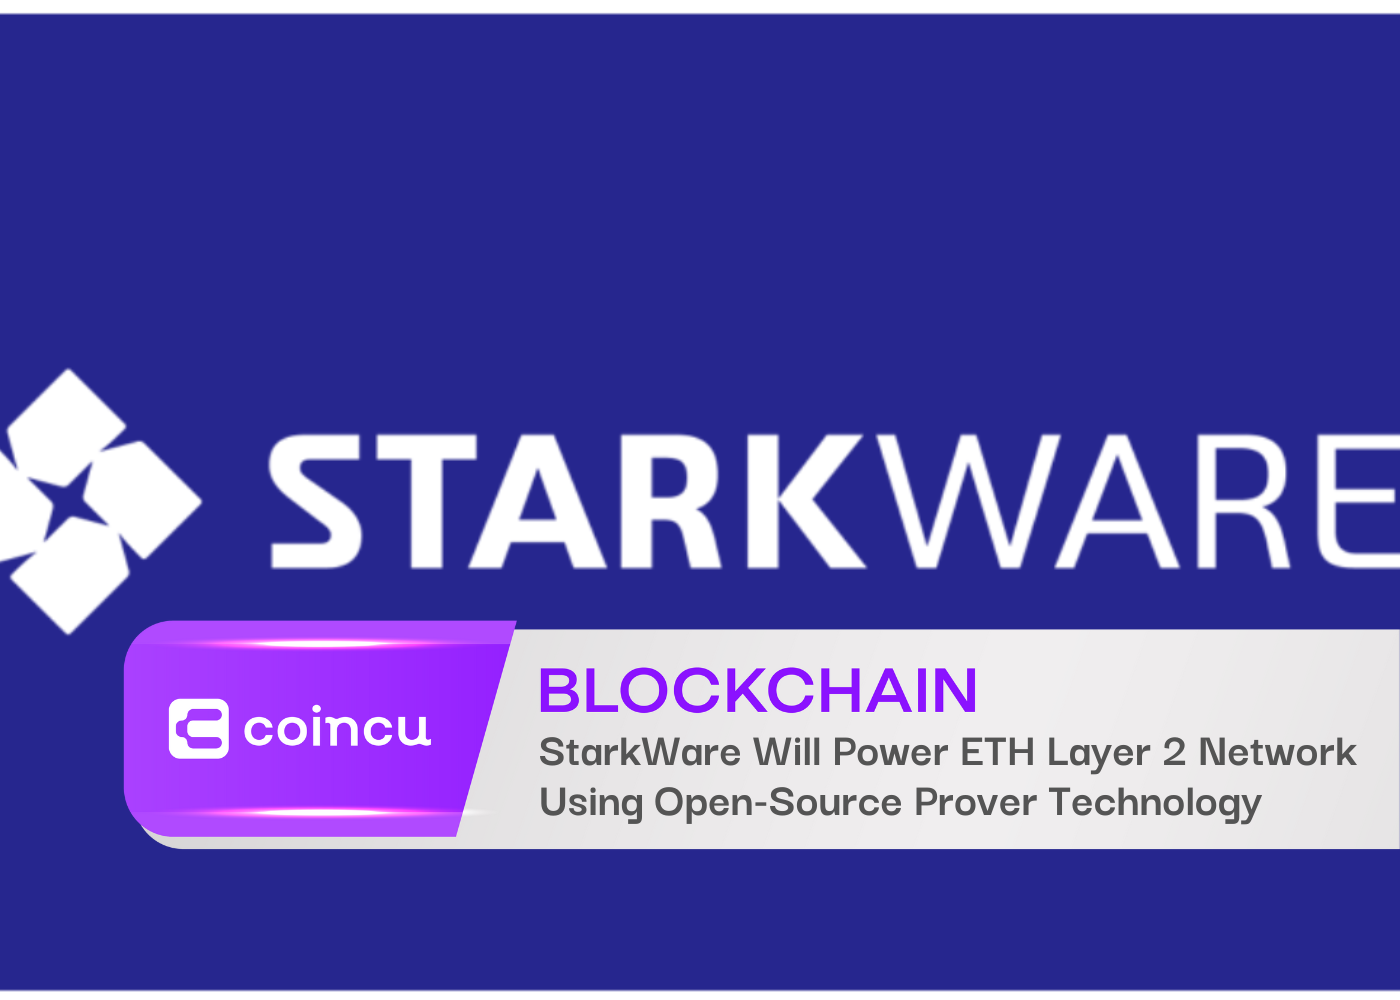 StarkWare Will Power The Ethereum